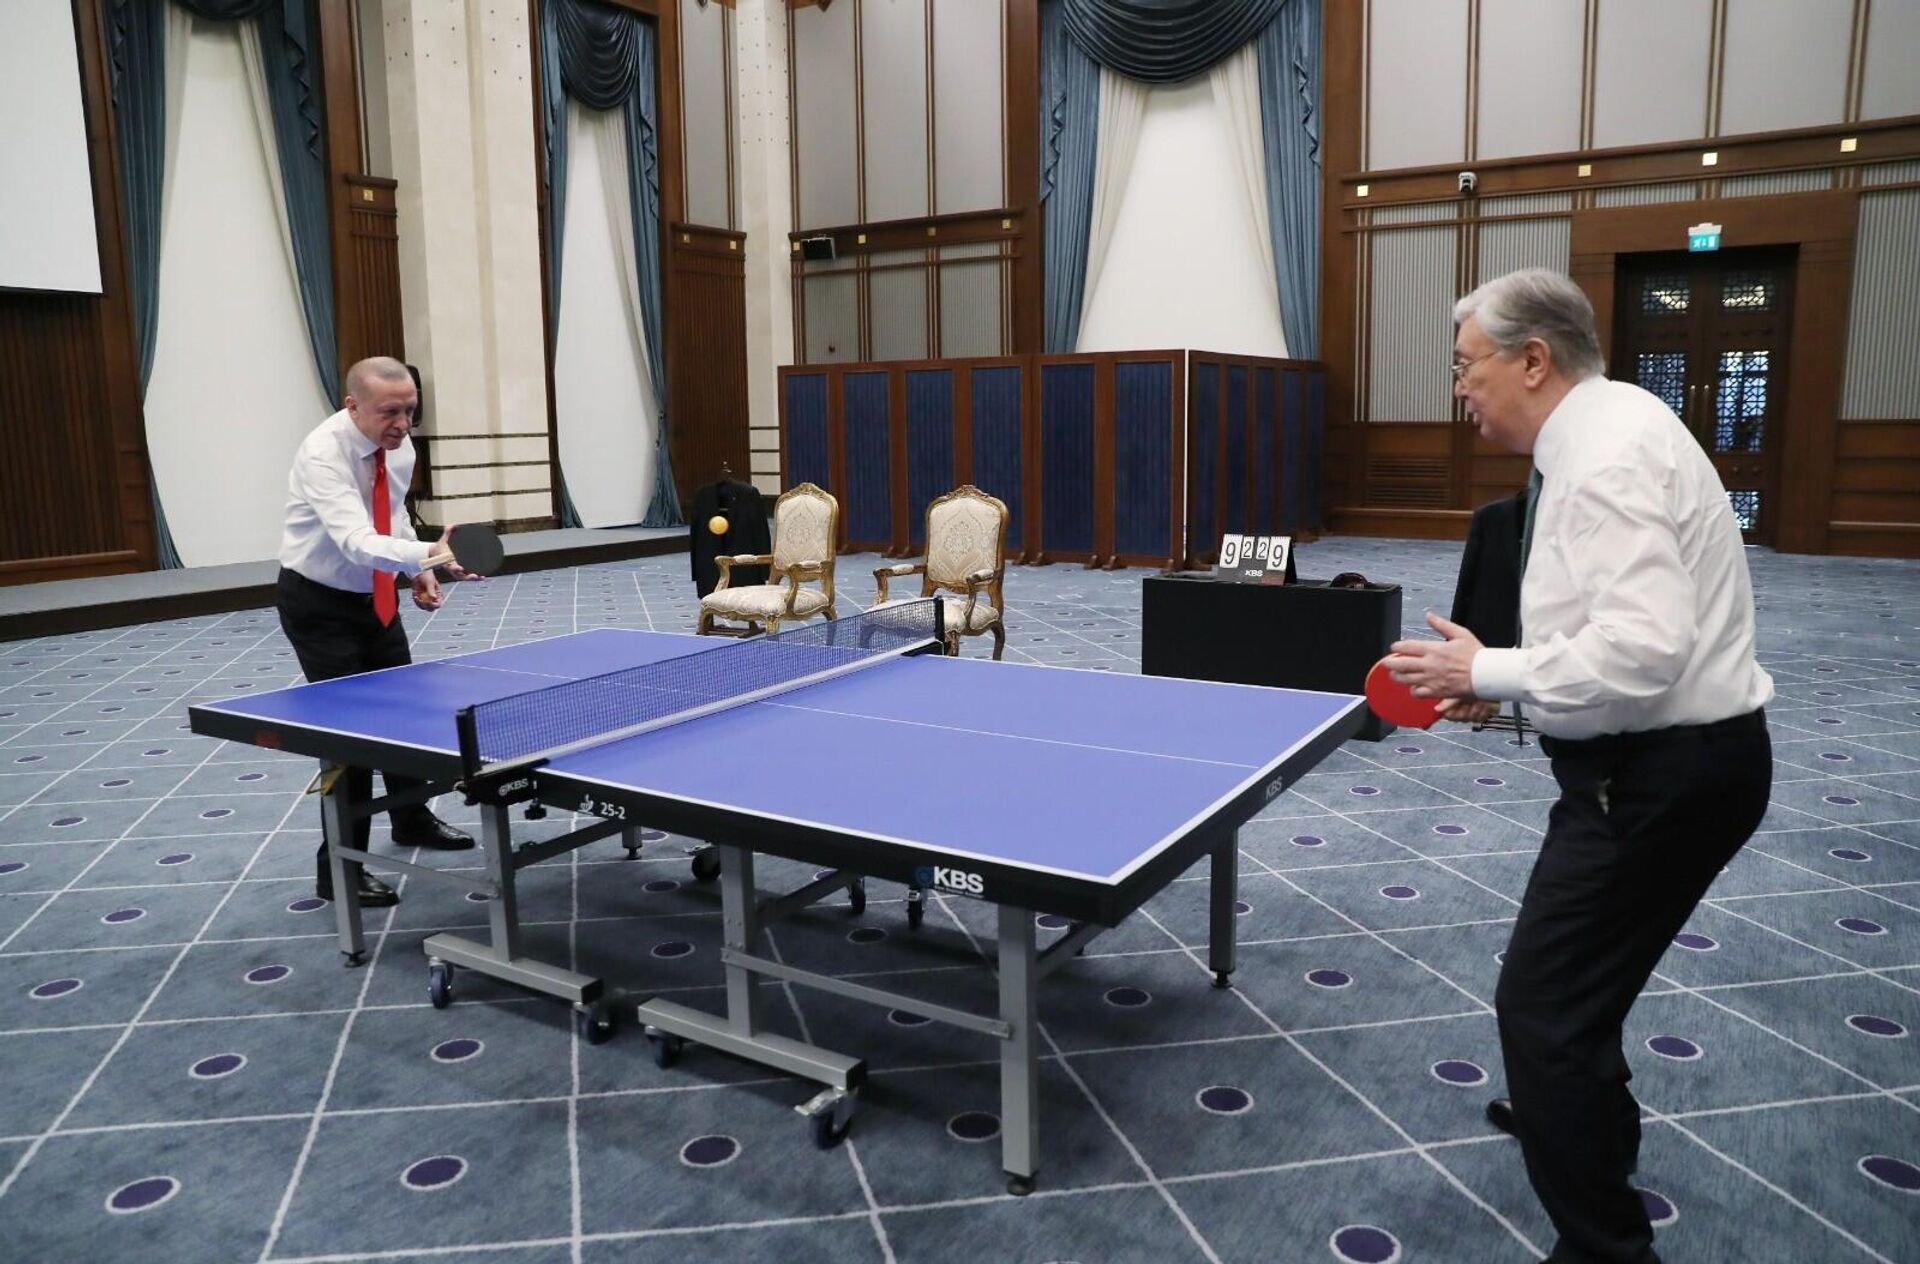 Cumhurbaşkanı Recep Tayyip Erdoğan, Kazakistan Cumhurbaşkanı Kasım Cömert Tokayev ile masa tenisi oynadı. - Sputnik Türkiye, 1920, 10.05.2022